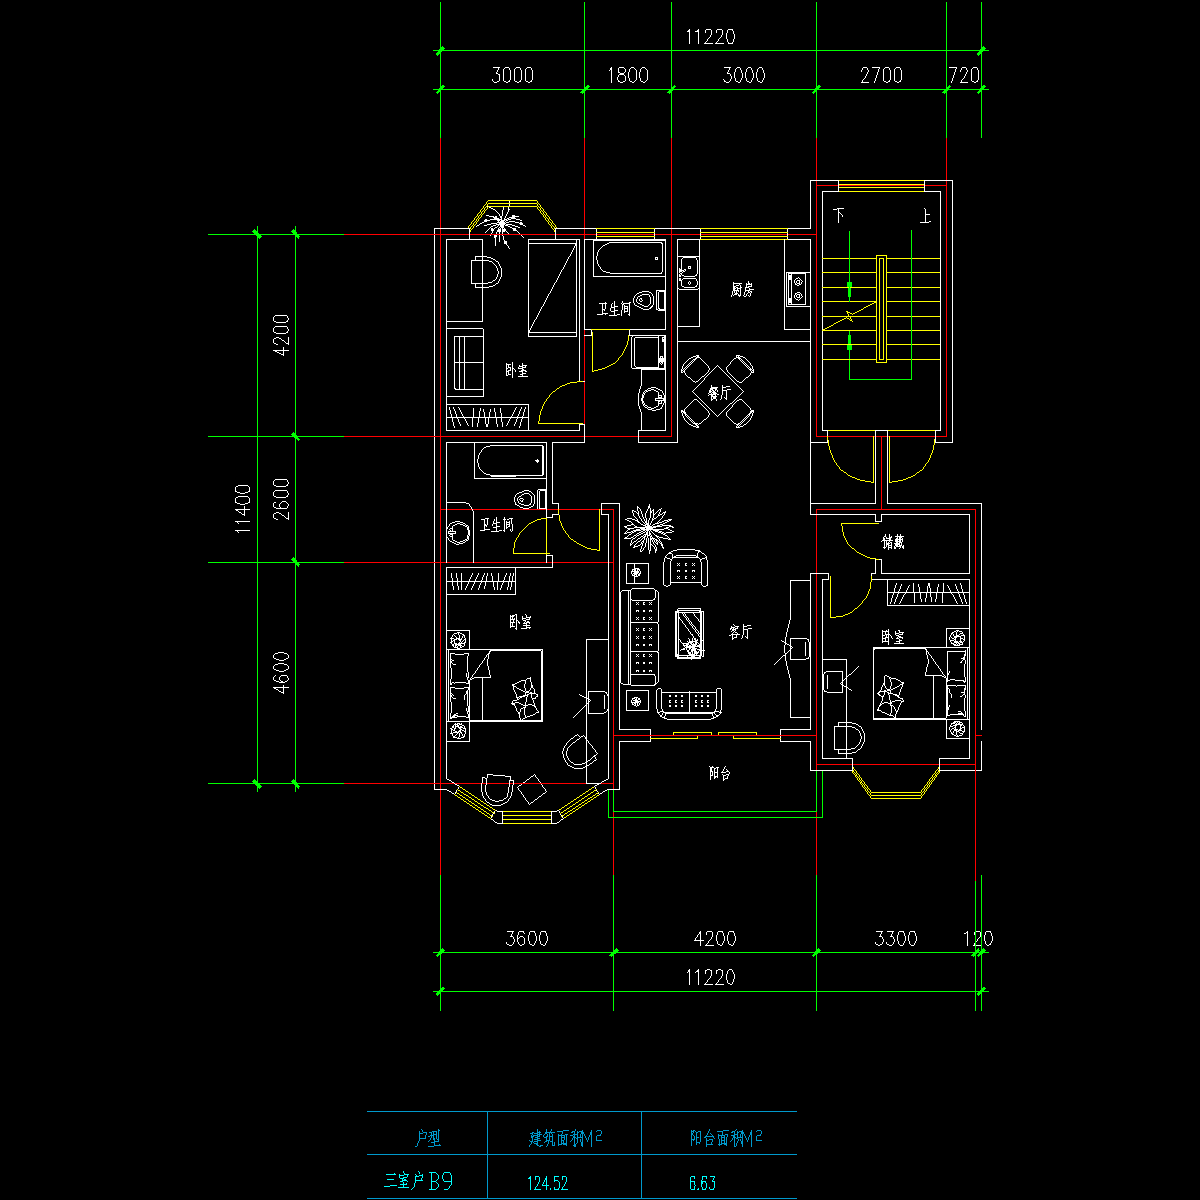 板式高层三室一厅单户户型CAD图纸(125)